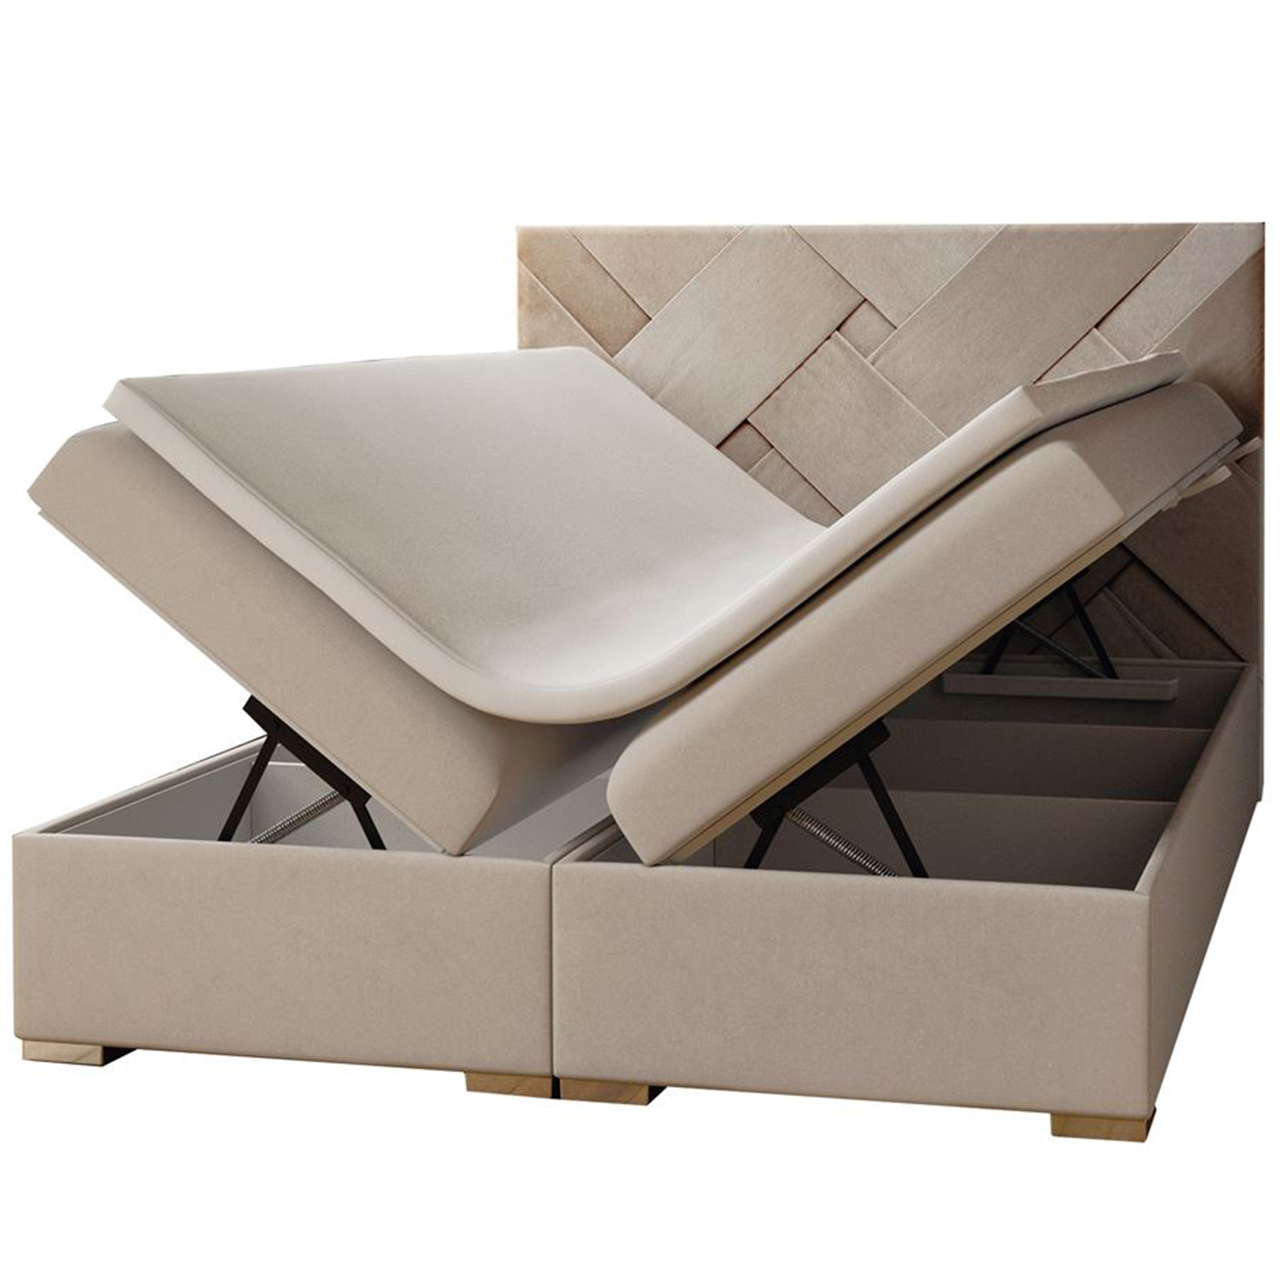 Upholstered bed BALIZO 160x200 magic velvet 2201